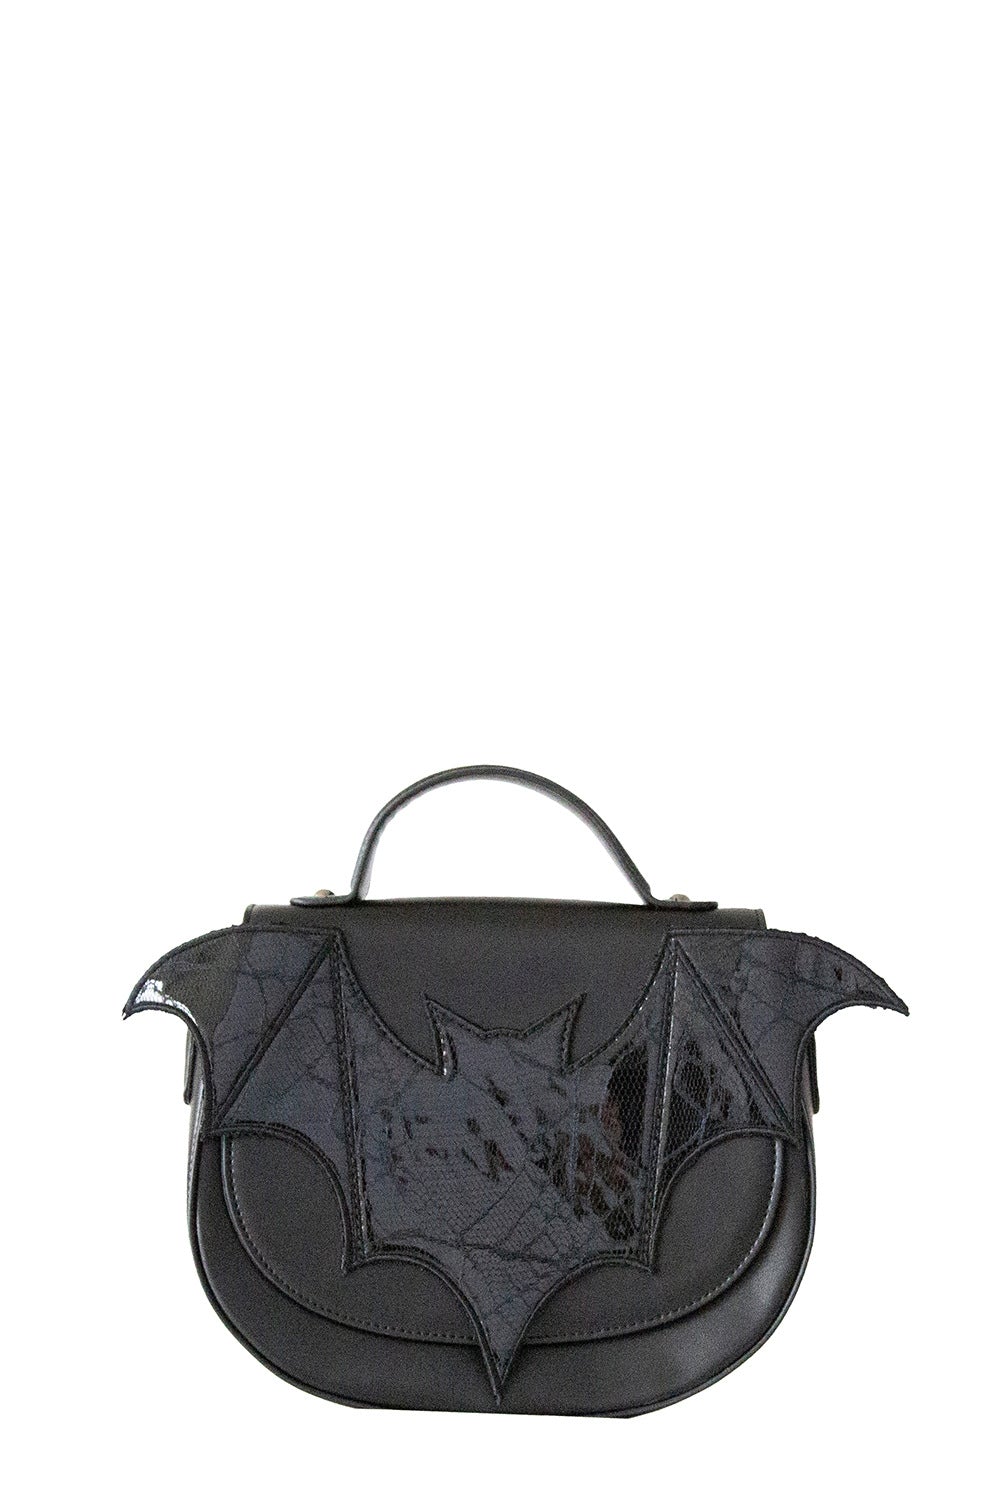 Banned Alternative Bellatrix the Bat Shoulder Bag